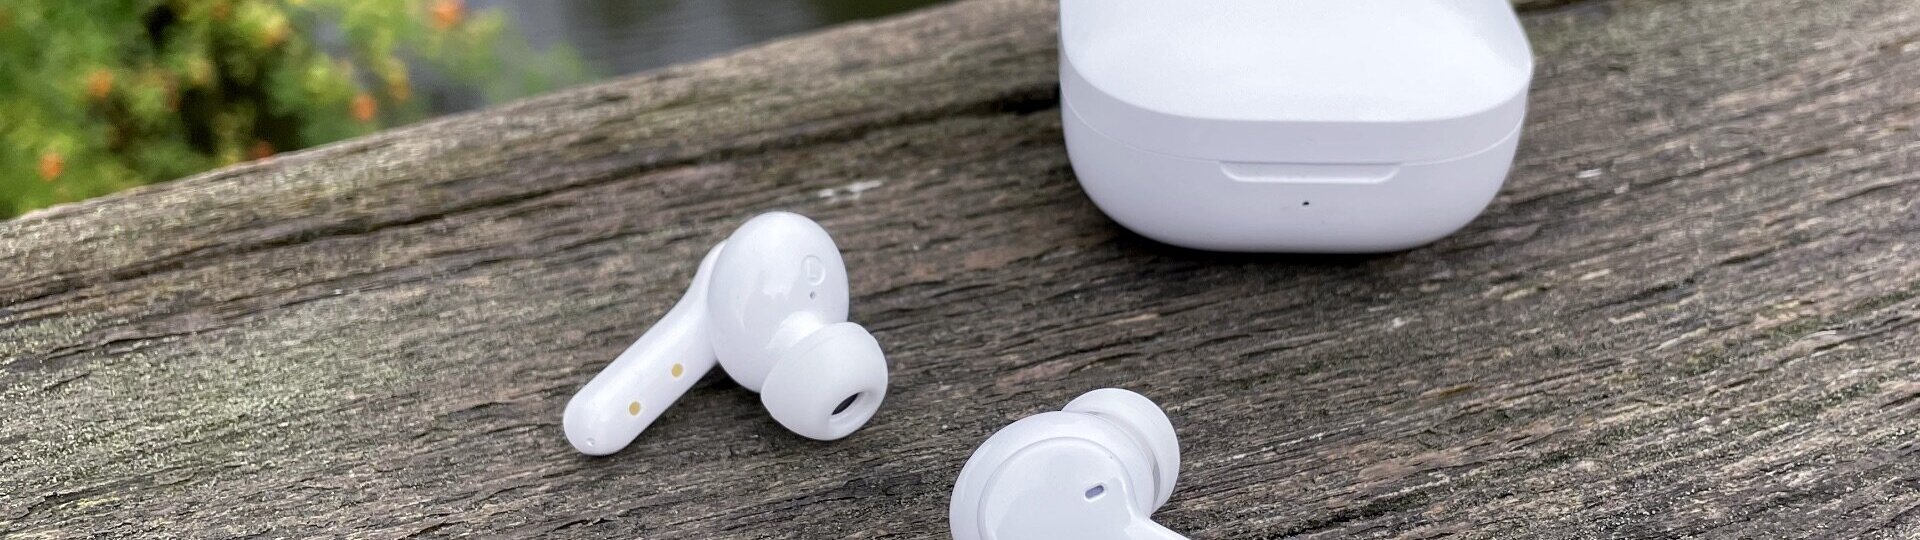 Sony údajně pracuje na bezdrátových sluchátkách ve stylu AirPods | Spekulace